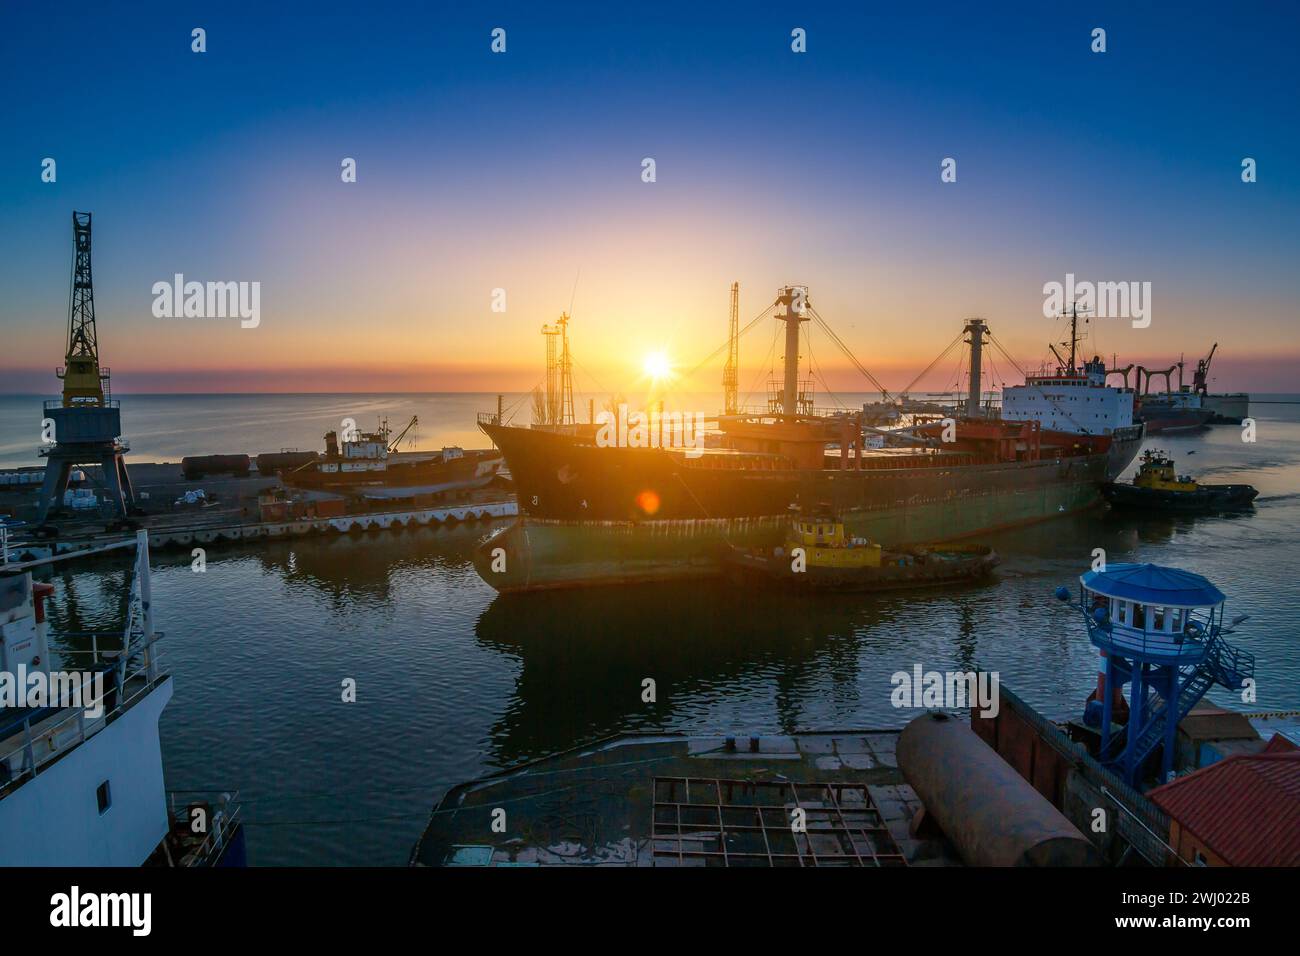 Sonnenaufgang, geschäftiger Seehafen, Frachtschiffe an Liegeplatz, Kräne zum Entladen bereit. Logistikzentrum für den Welthandel, Frachter Ready International Stockfoto